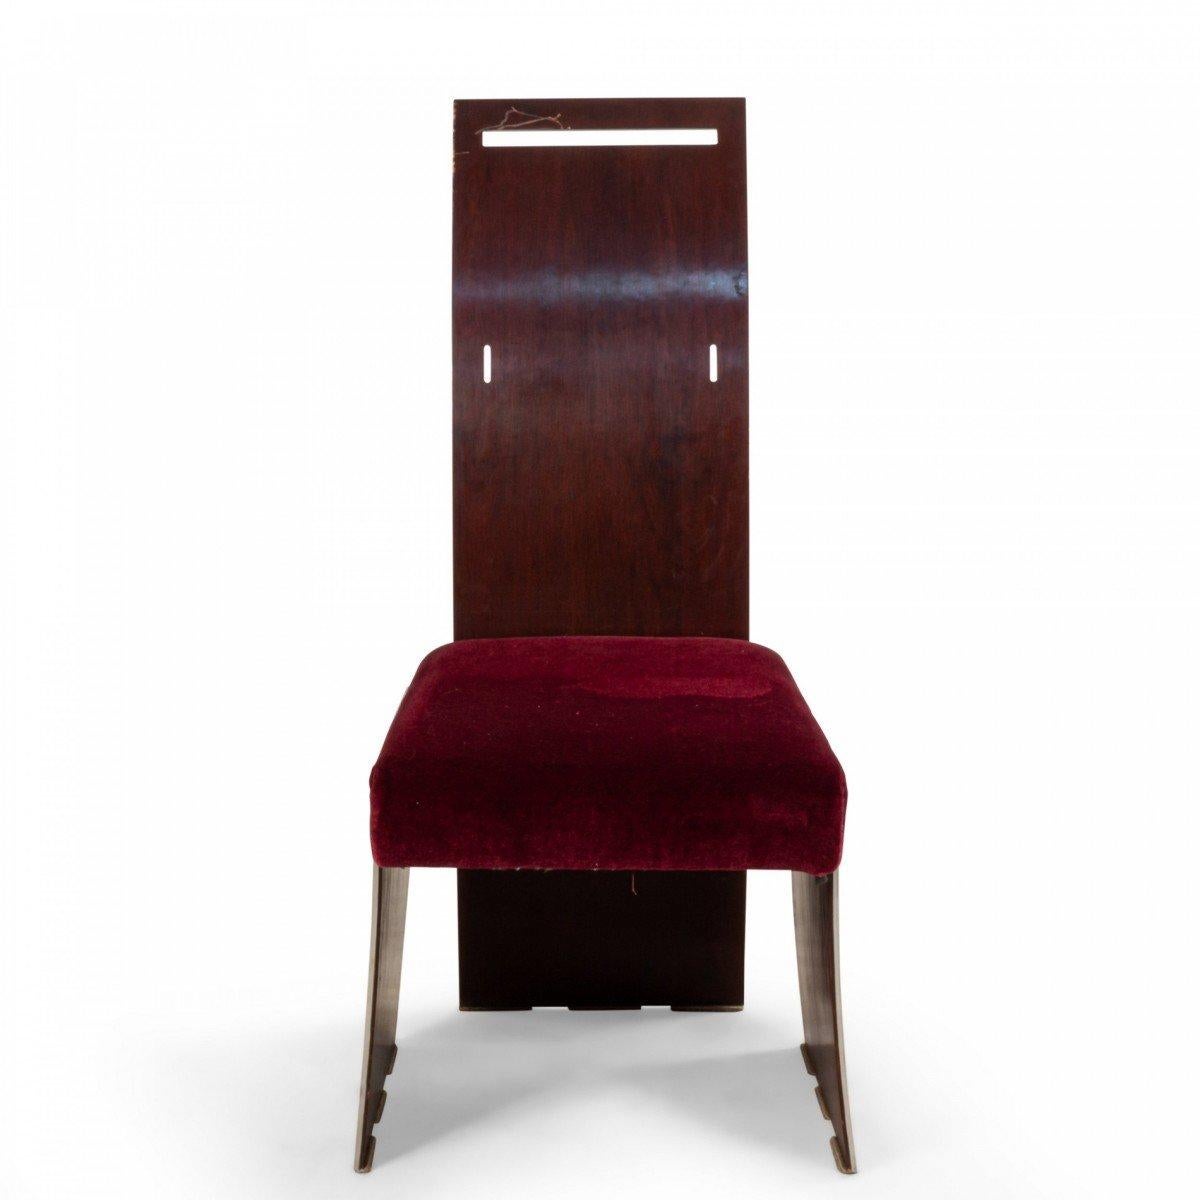 Ensemble de 16 chaises de salle à manger de style américain des années 1940 (design Frank Lloyd Wright) en acajou et métal de forme géométrique avec un haut dossier et des bras évasés avec un siège tapissé. (12 bras 4 côtés)
